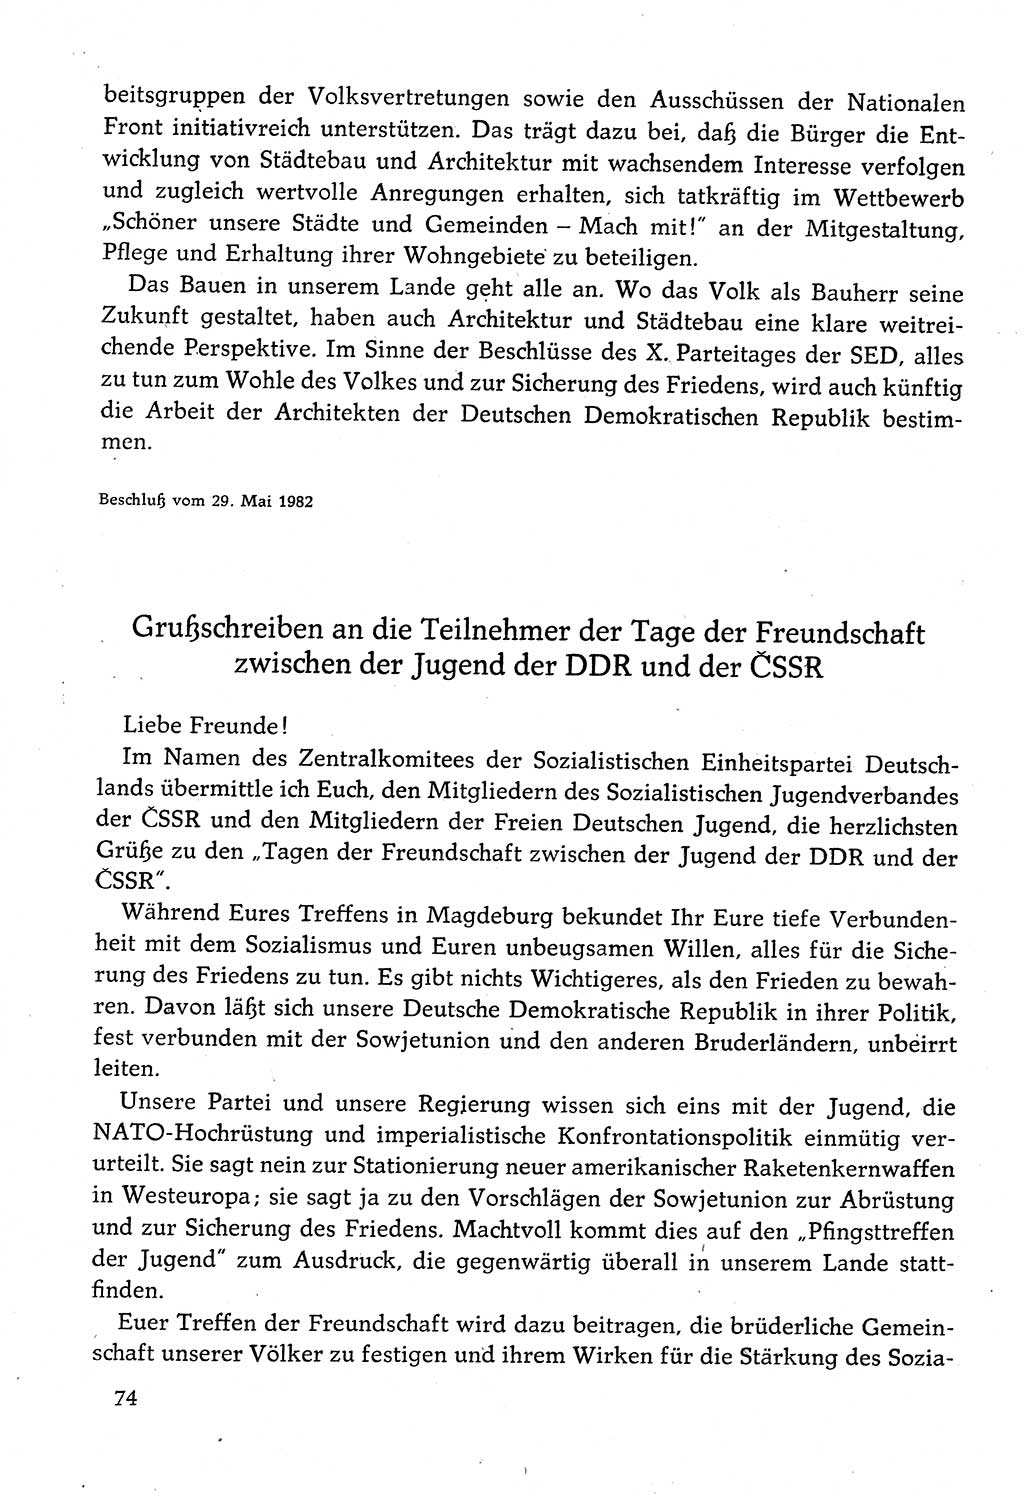 Dokumente der Sozialistischen Einheitspartei Deutschlands (SED) [Deutsche Demokratische Republik (DDR)] 1982-1983, Seite 74 (Dok. SED DDR 1982-1983, S. 74)